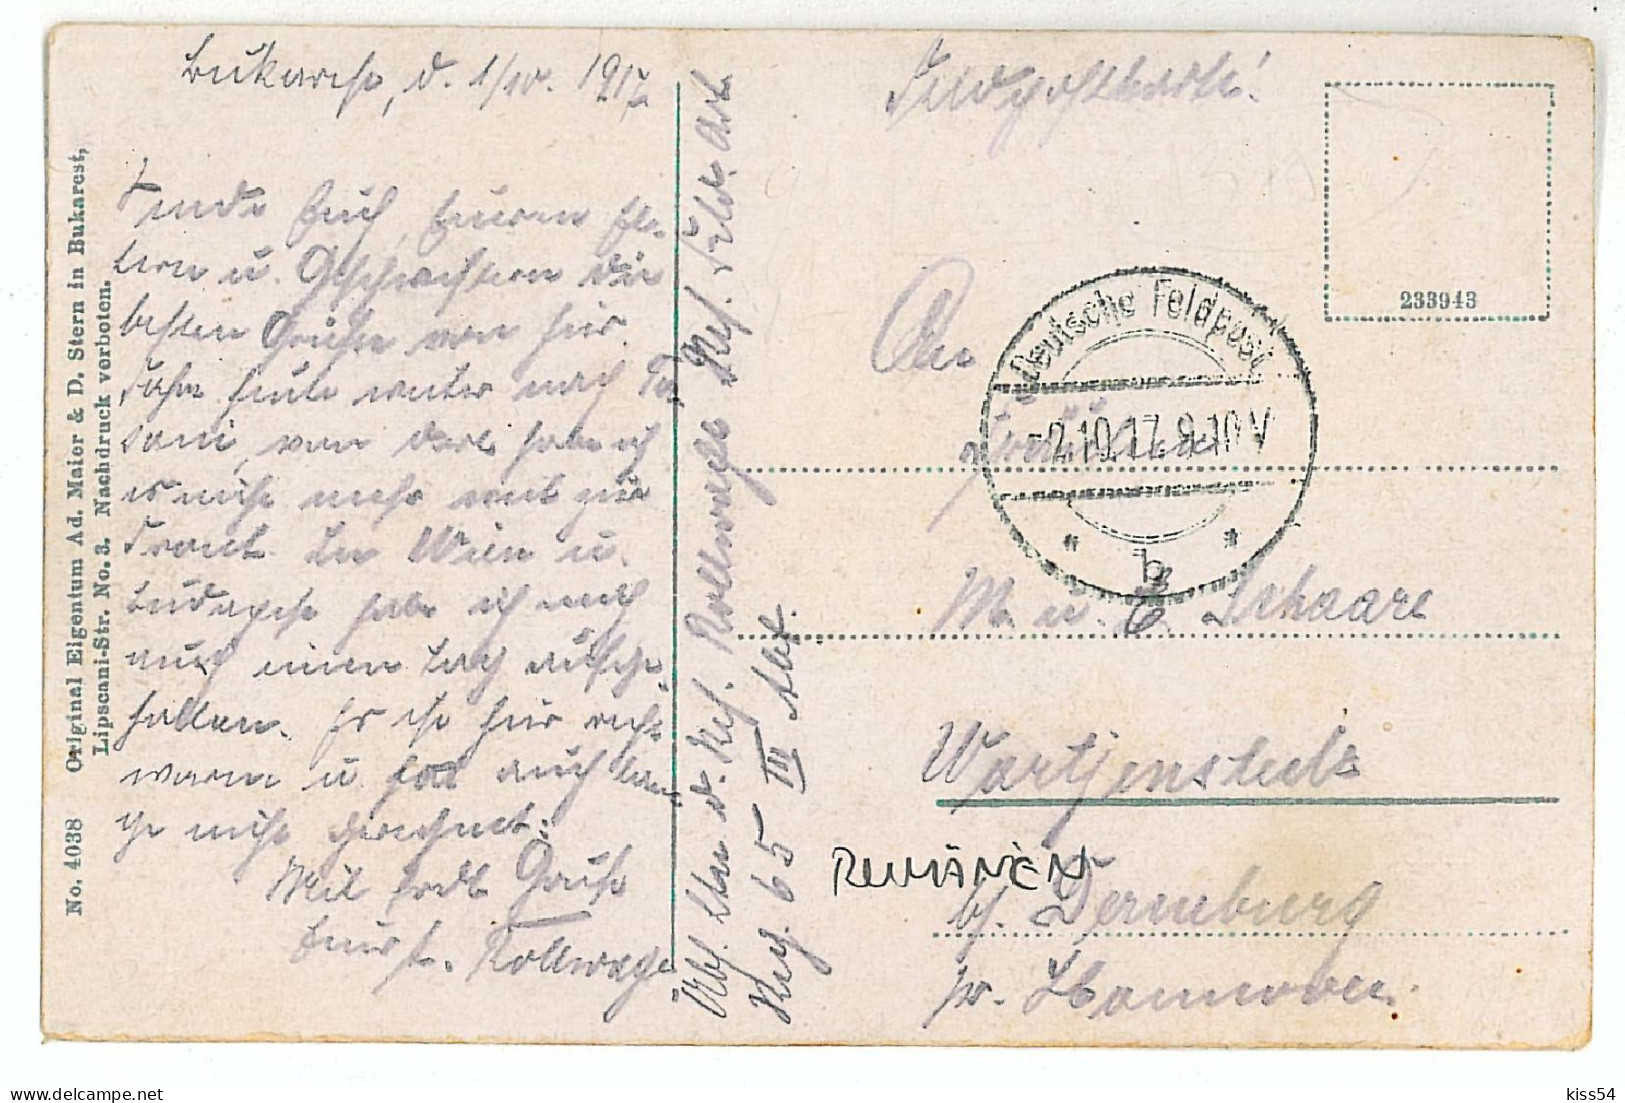 RO 40 - 1375 BUCURESTI, Bratianu Statue, Romania - Old Postcard - Used - 1917 - Rumänien